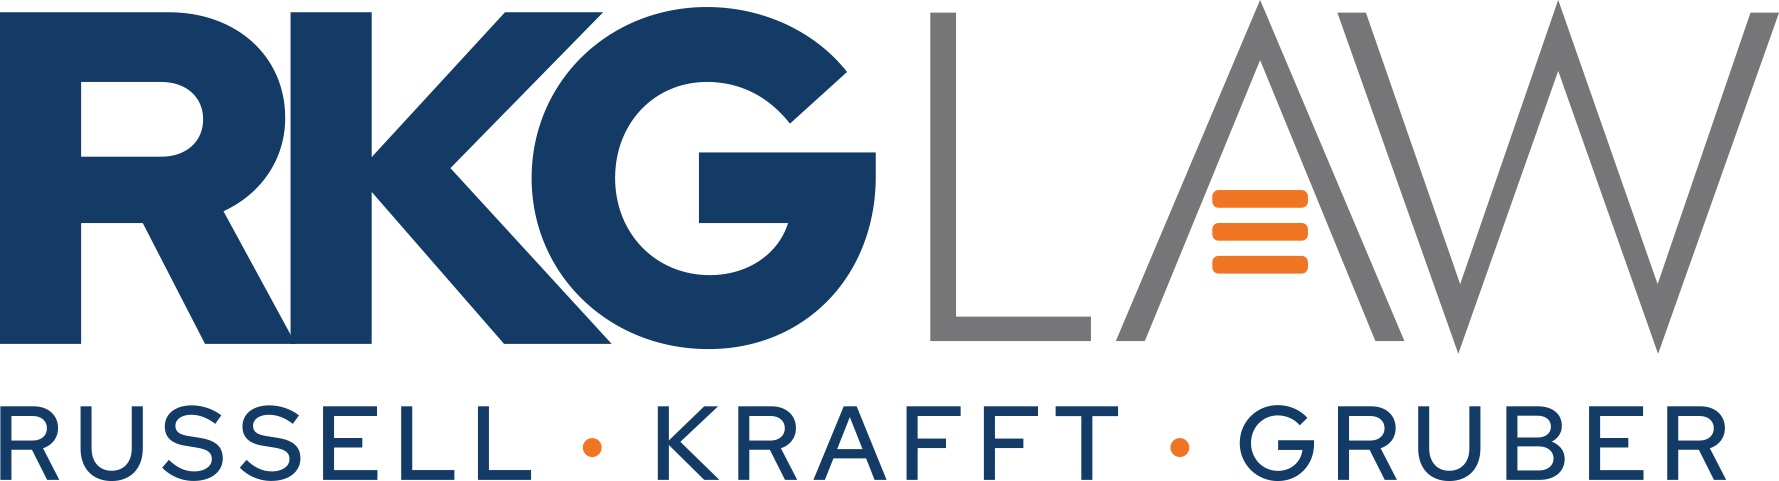 RKG Law Logo